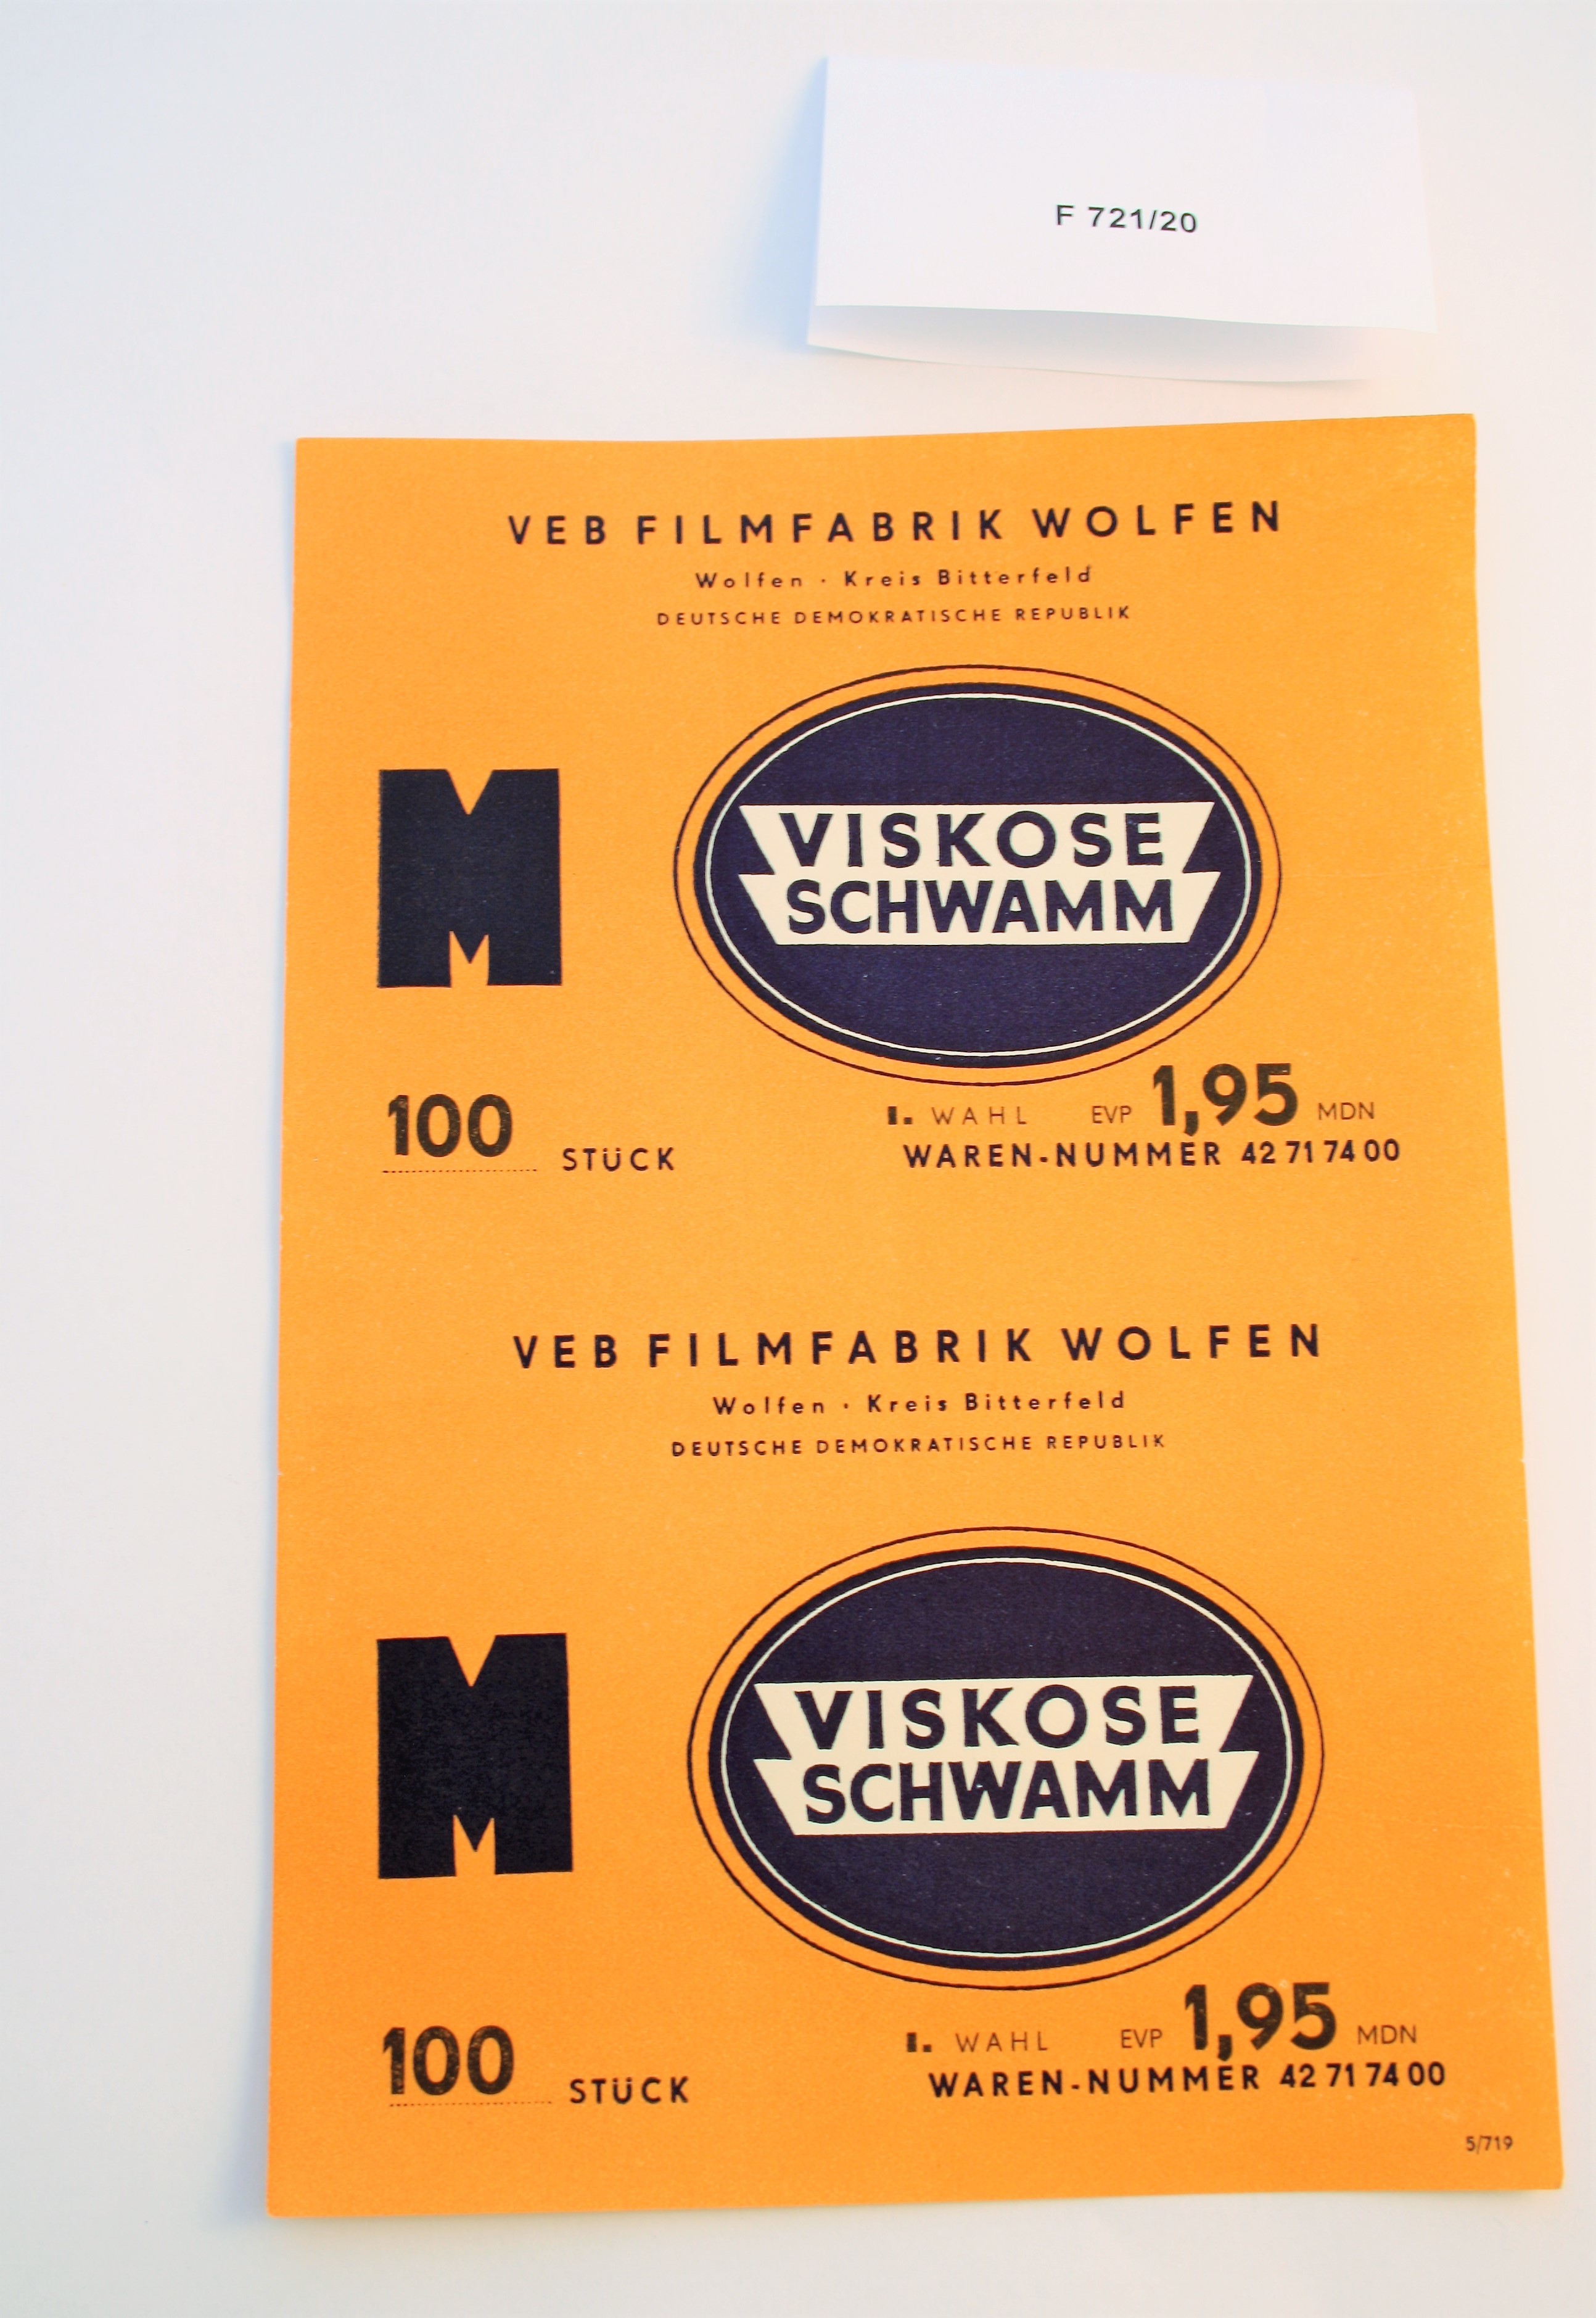 Produktzettel Viskose Schwamm M (Industrie- und Filmmuseum Wolfen CC BY-NC-SA)